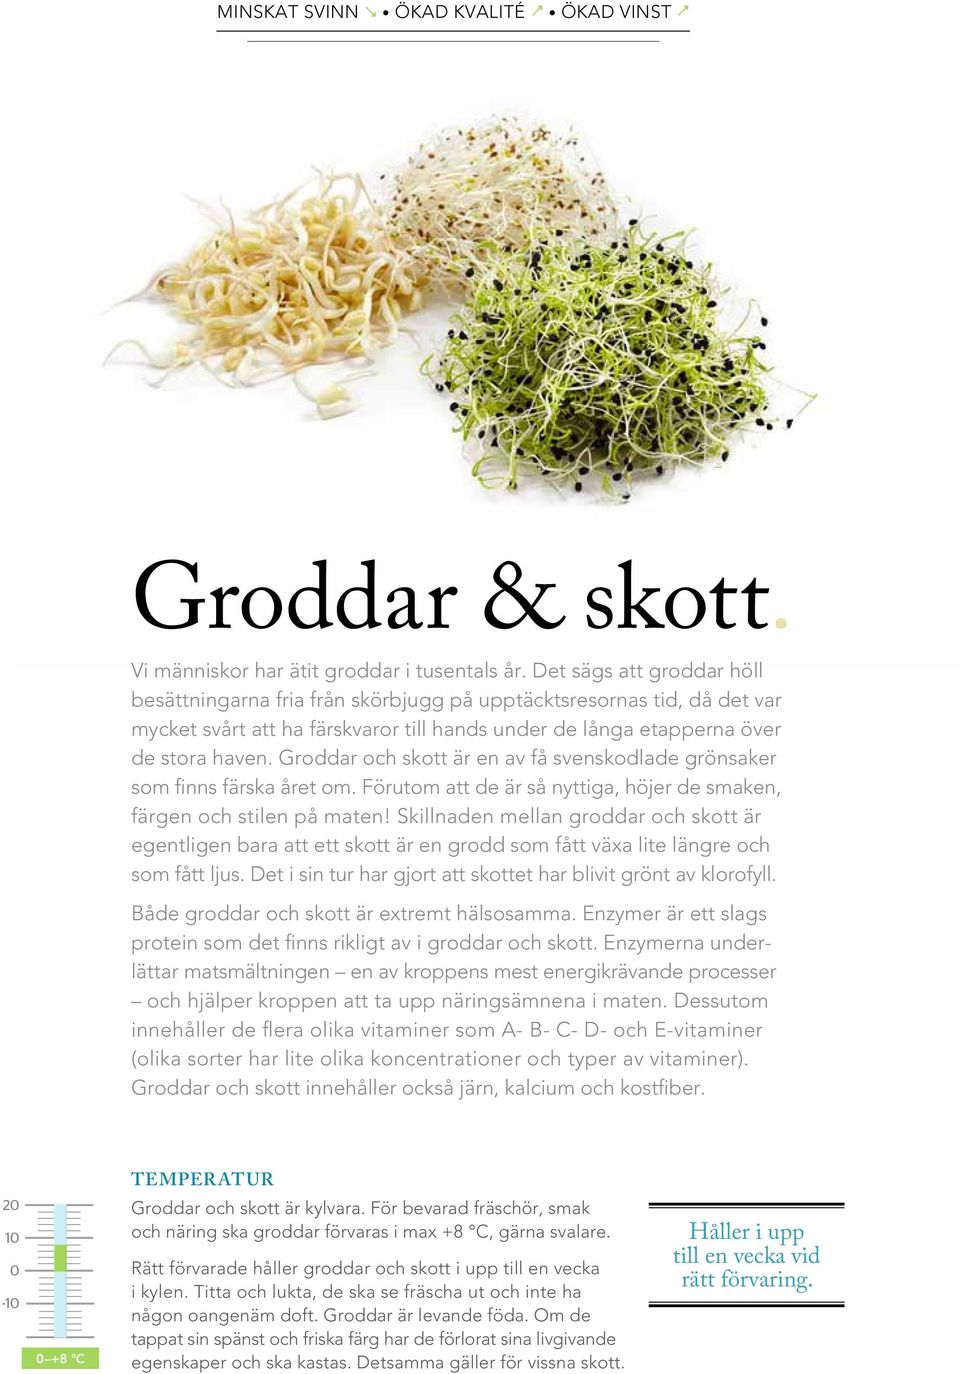 Groddar och skott är en av få svenskodlade grönsaker som finns färska året om. Förutom att de är så nyttiga, höjer de smaken, färgen och stilen på maten!